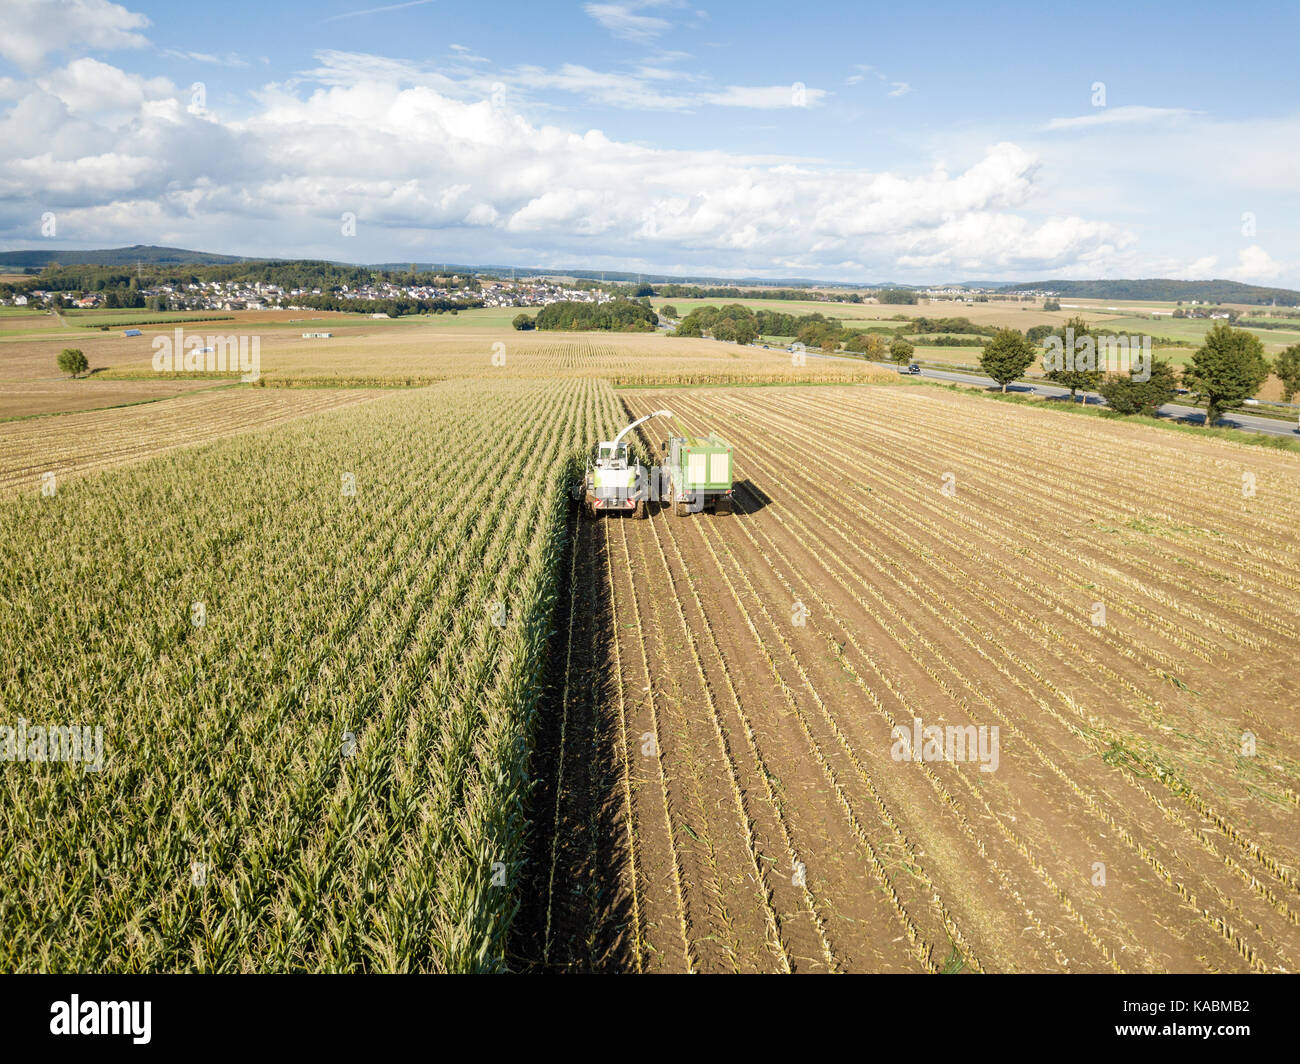 La récolte dans le champ de maïs. drone aérien shot Banque D'Images